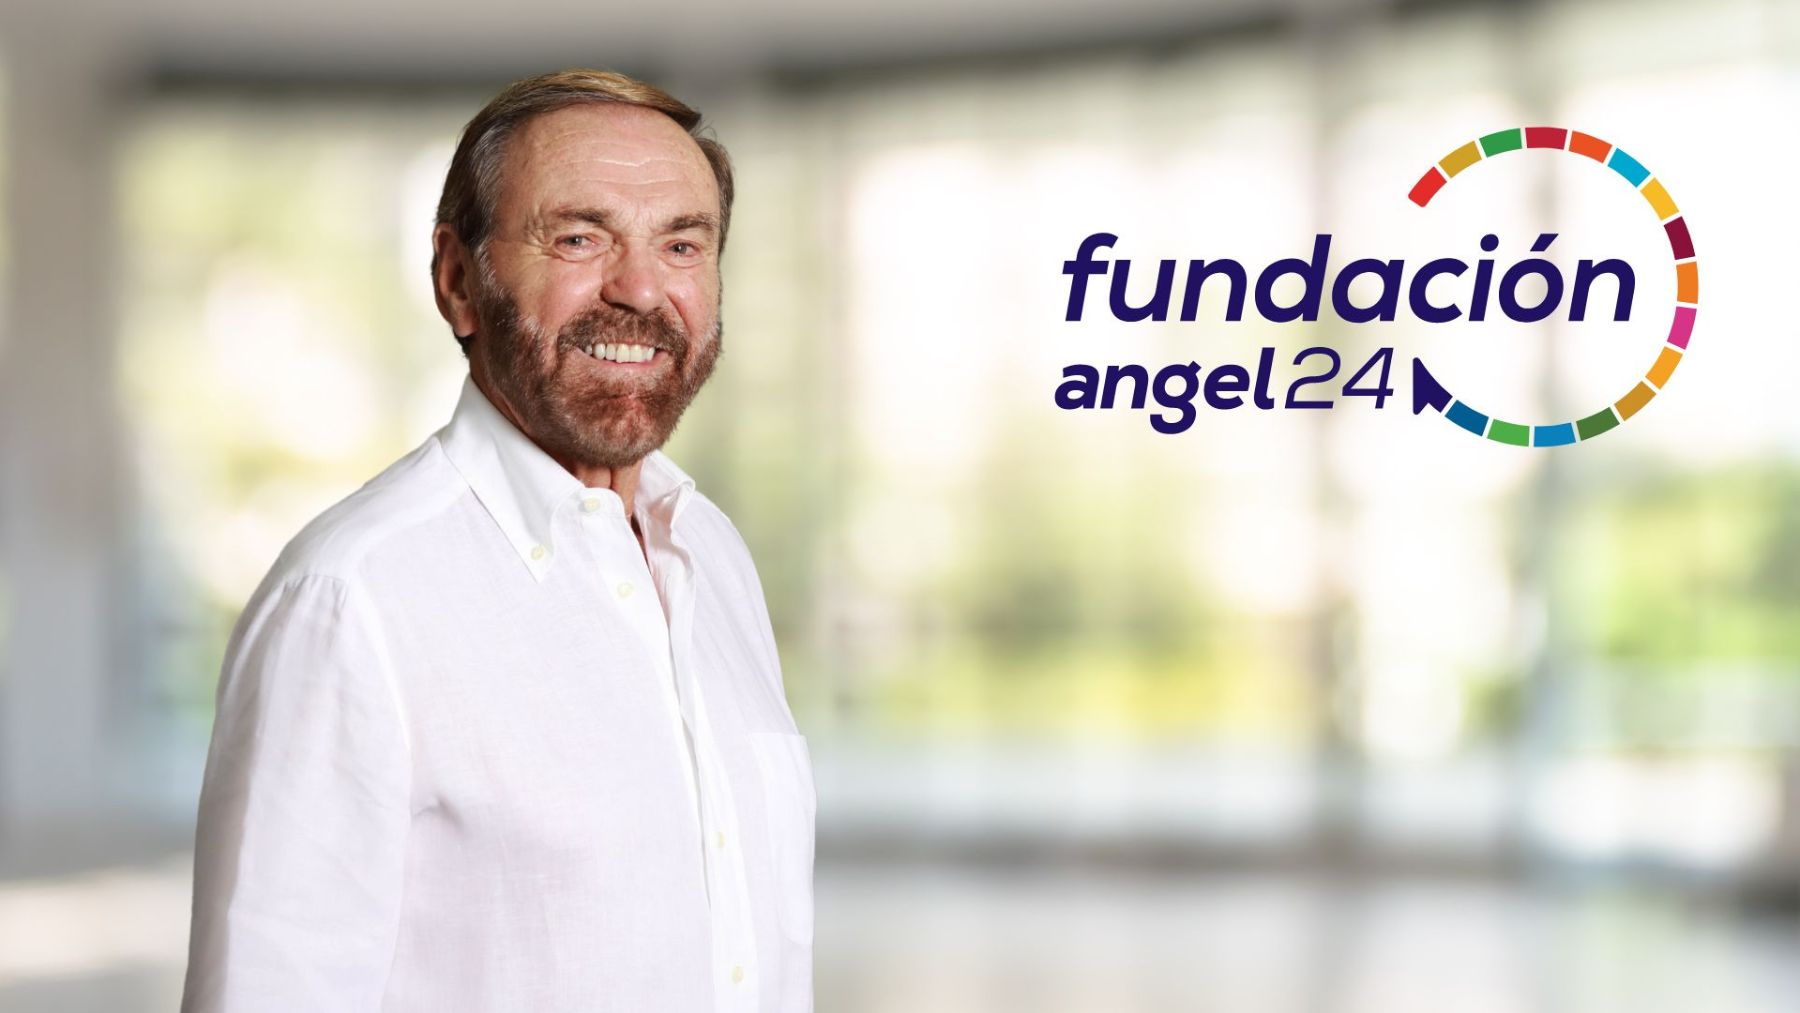 Fundación angel24.